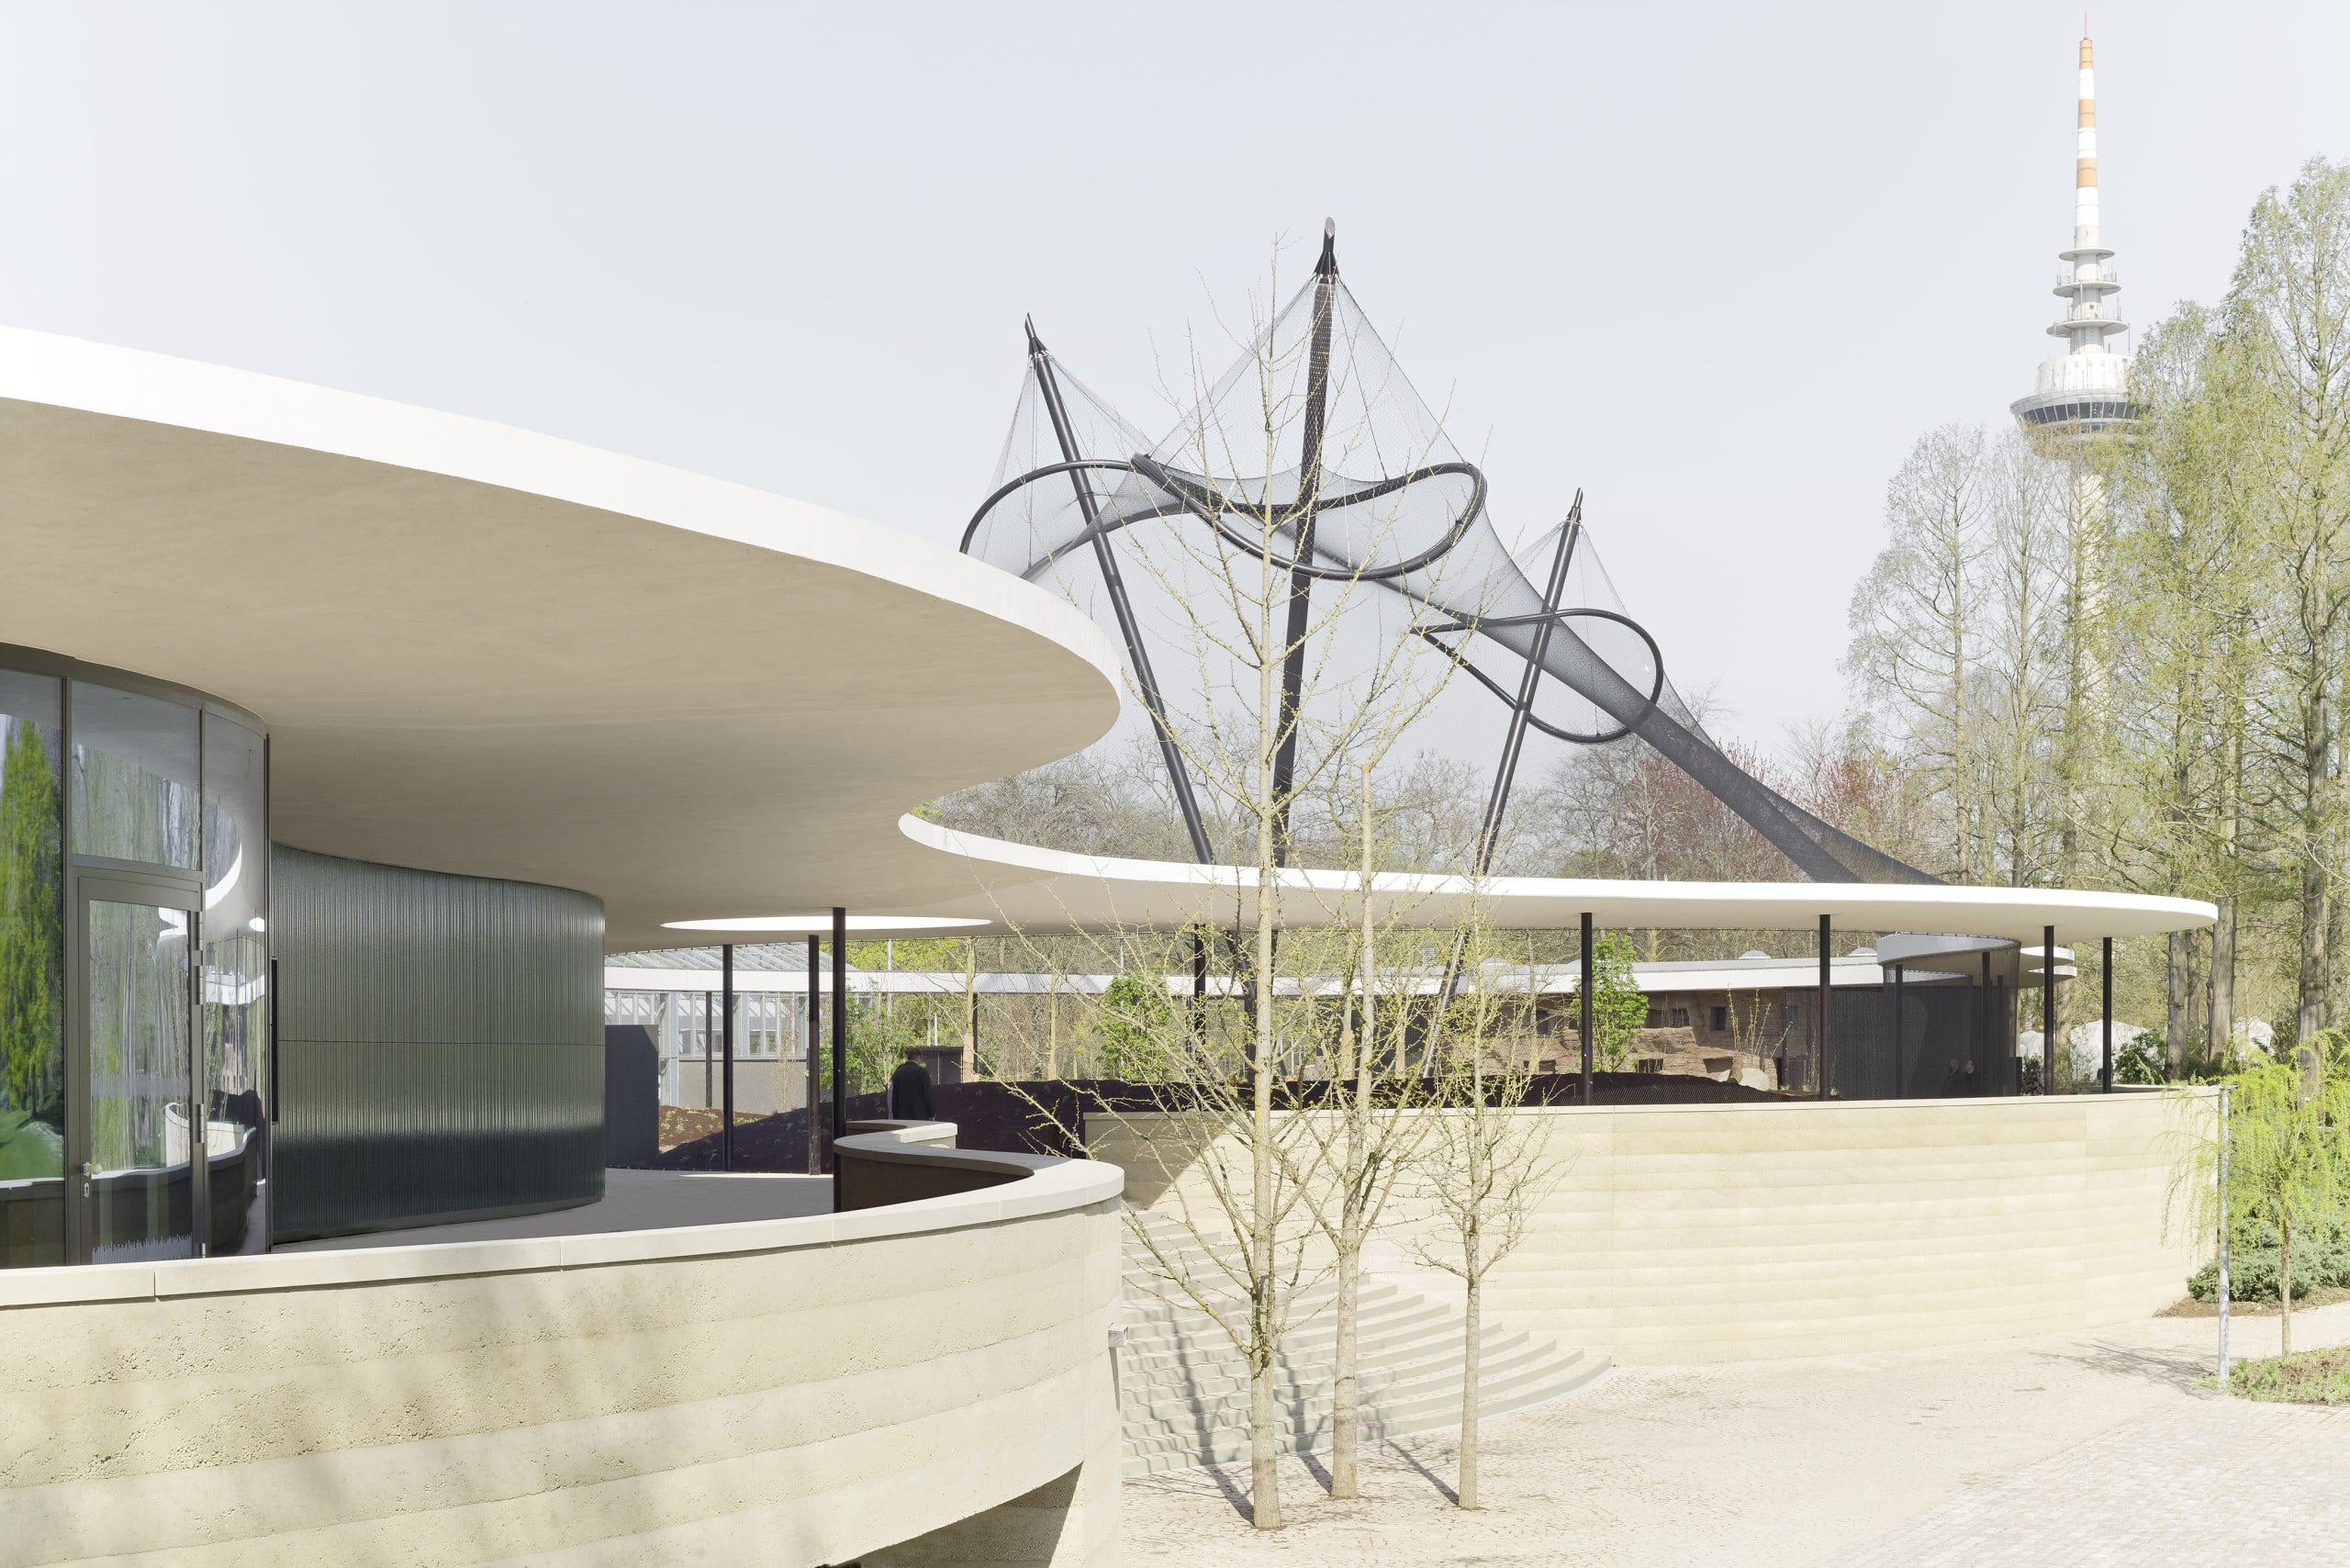 Das Grüne Erlebniszentrum von BEZ + Kock Architekten im Luisenpark Mannheim zeichnet sich durch seine fließende Form mit dem Dach als Verbindungselement aus. Bildquelle: © Brigida González